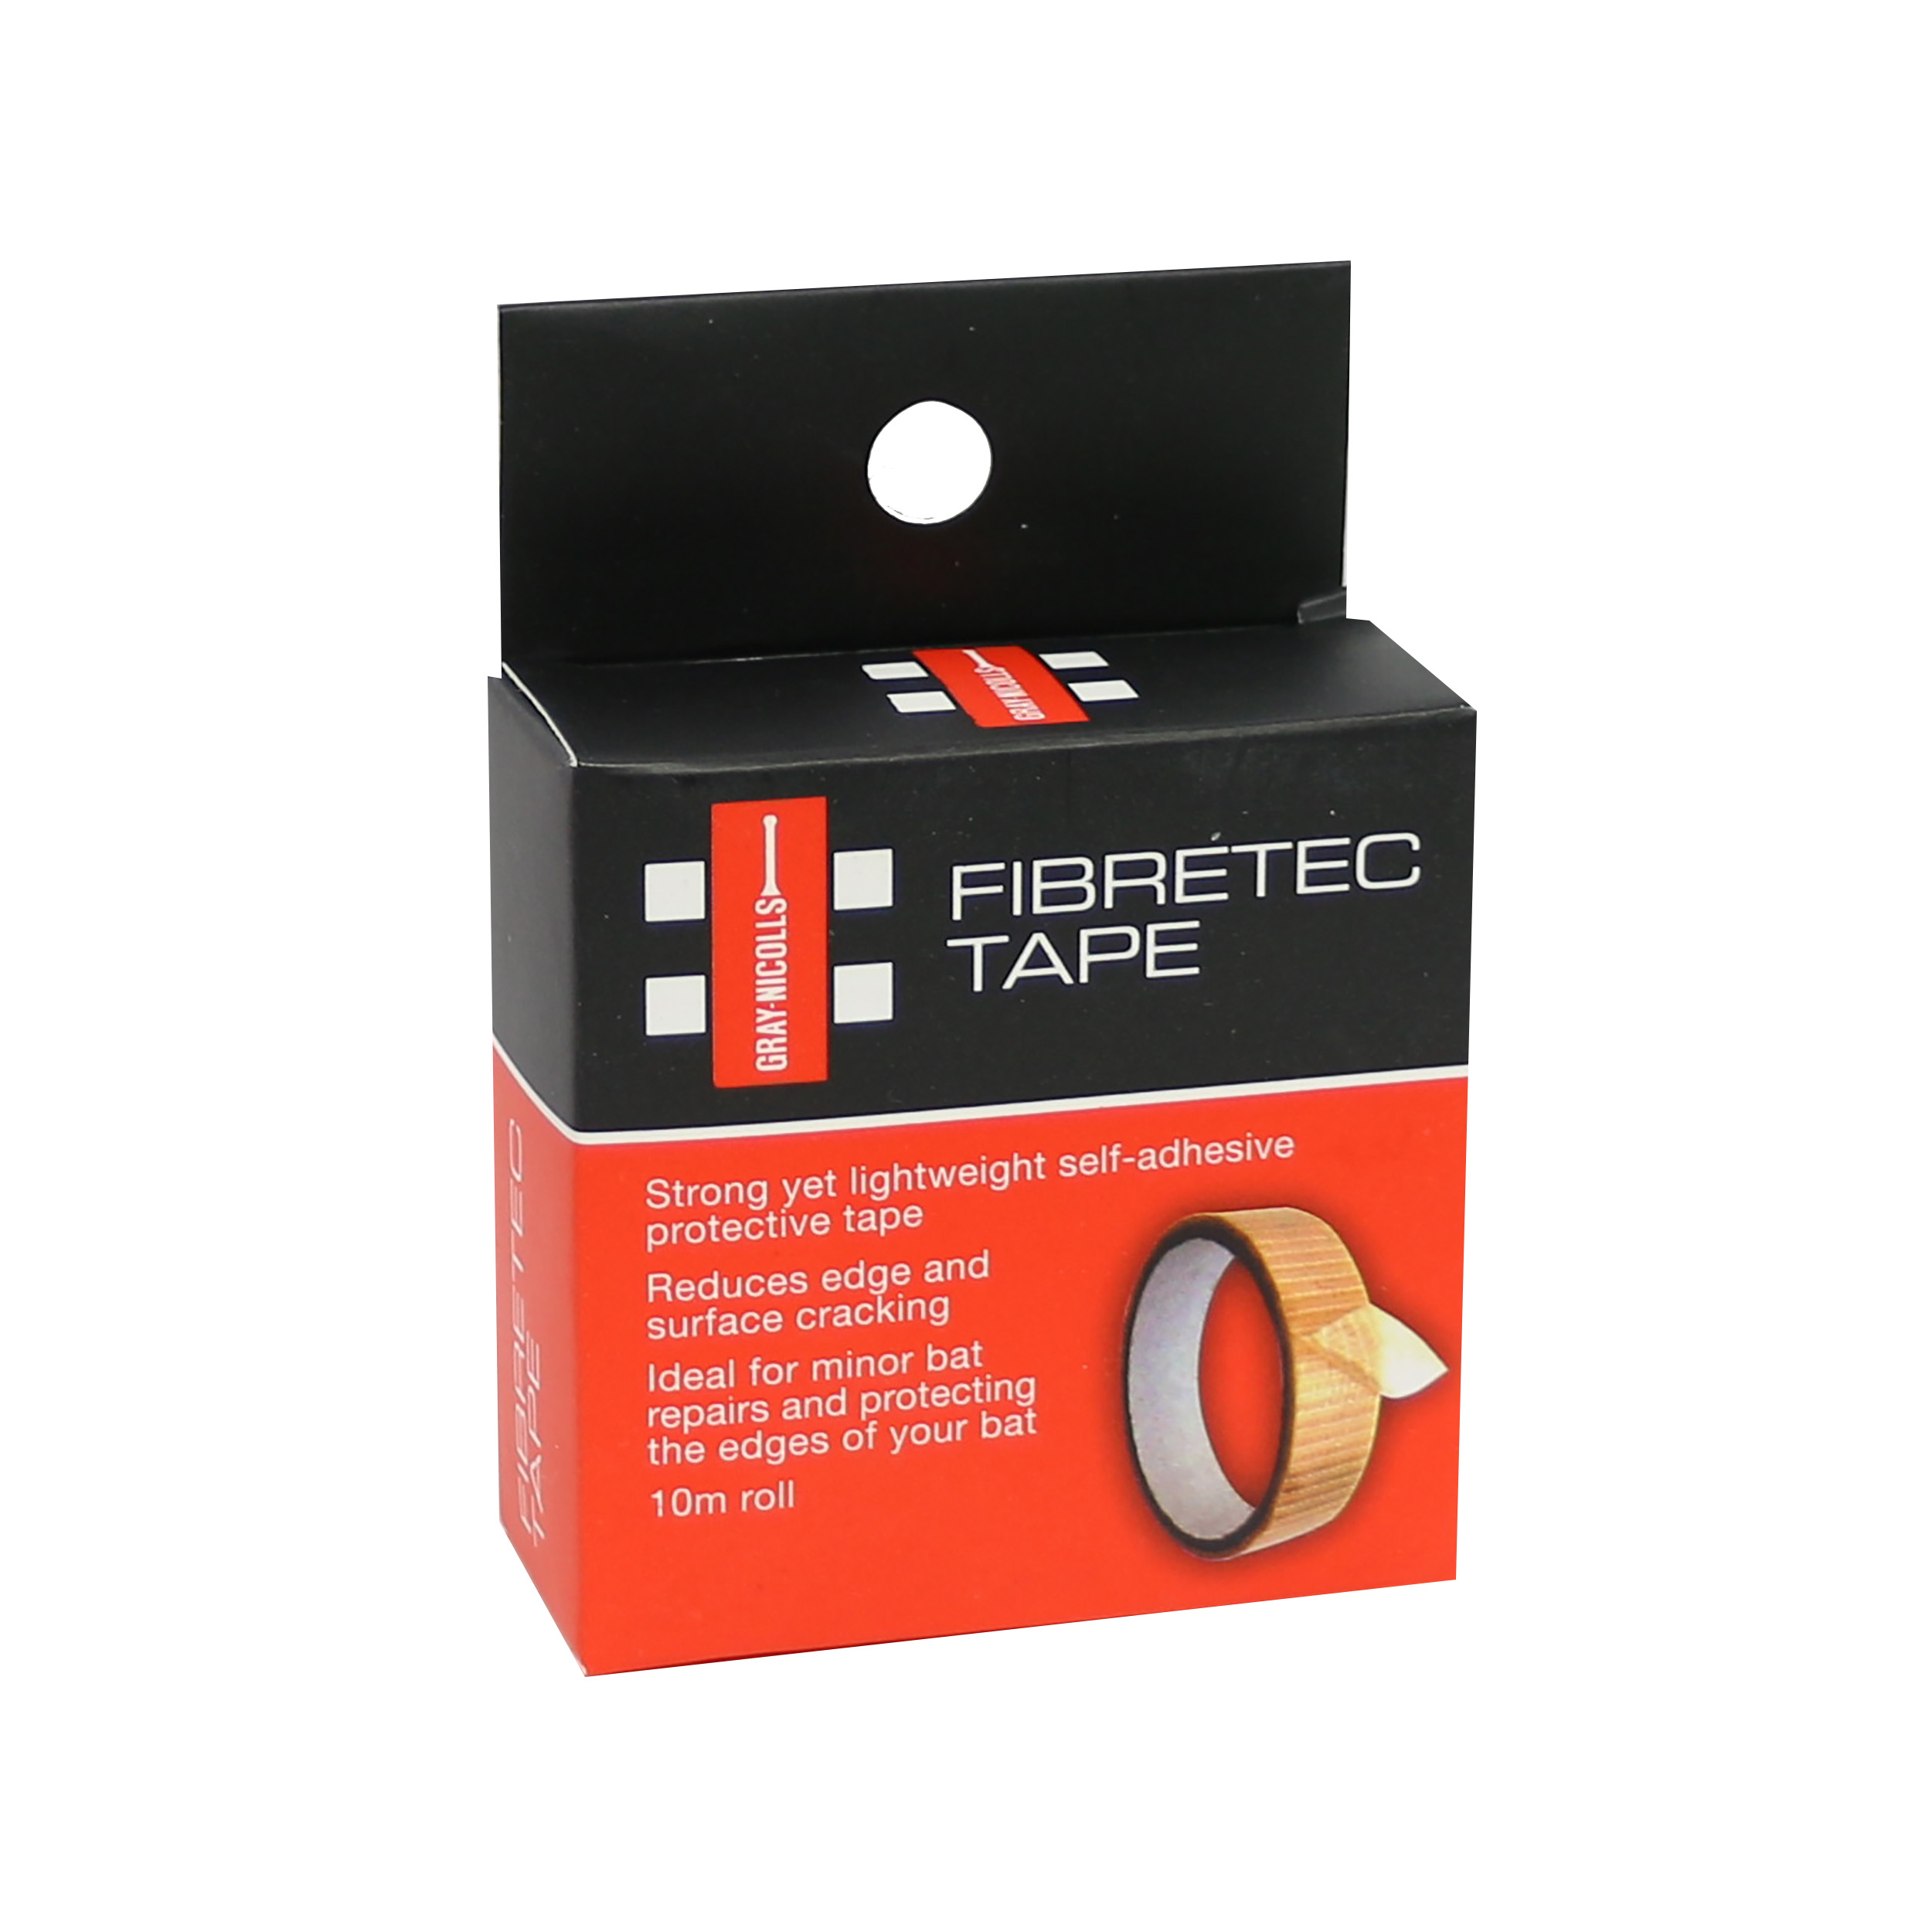 20595-Fibretec-Tape-Packaging.jpg